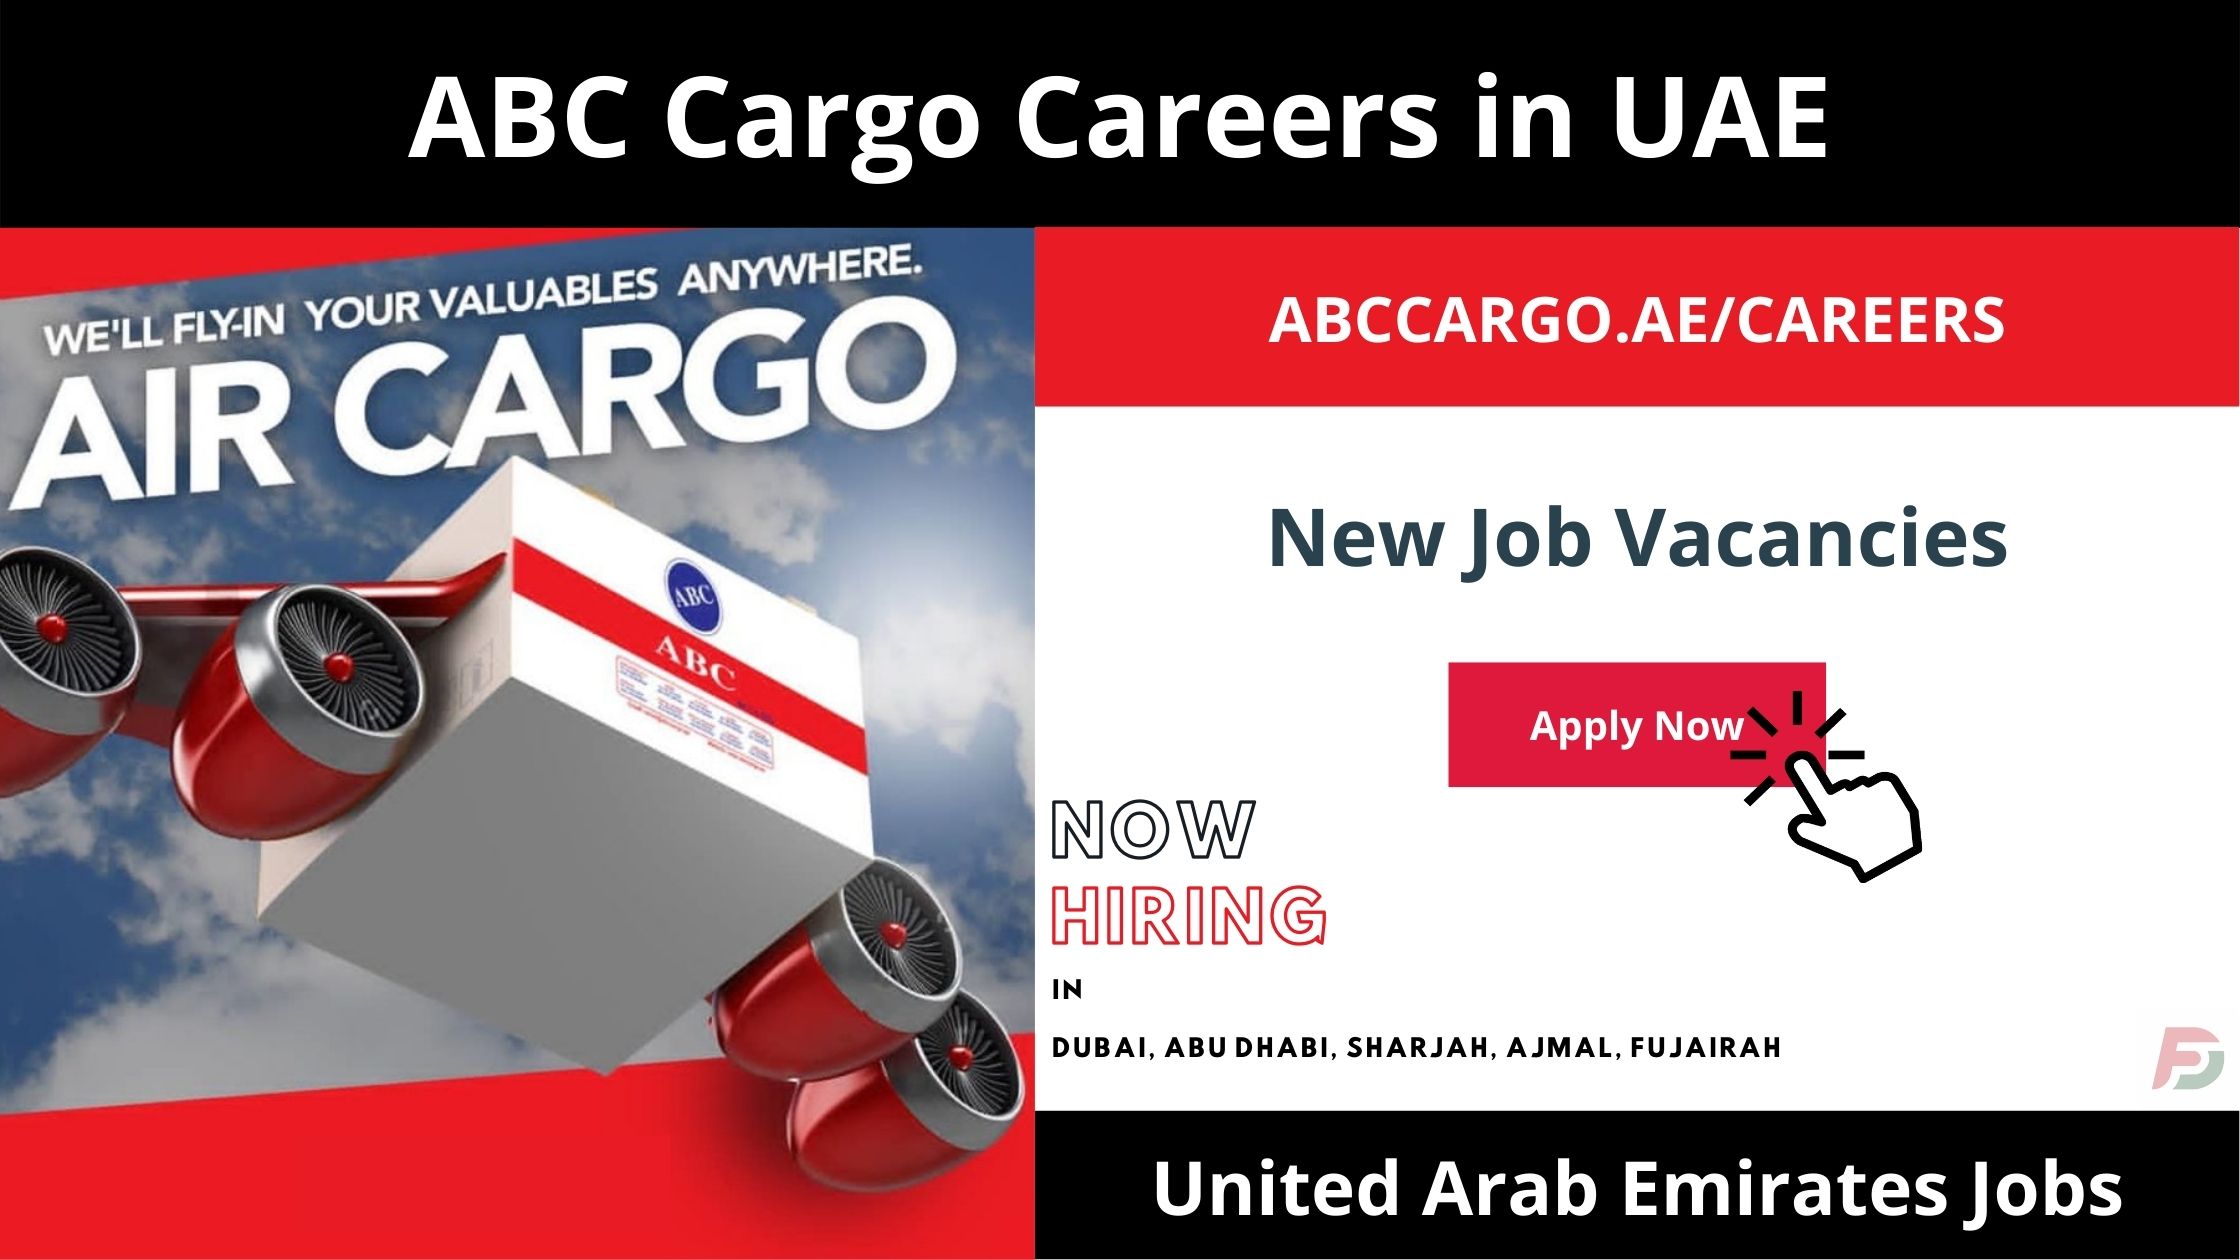 ABC Cargo Careers in UAE